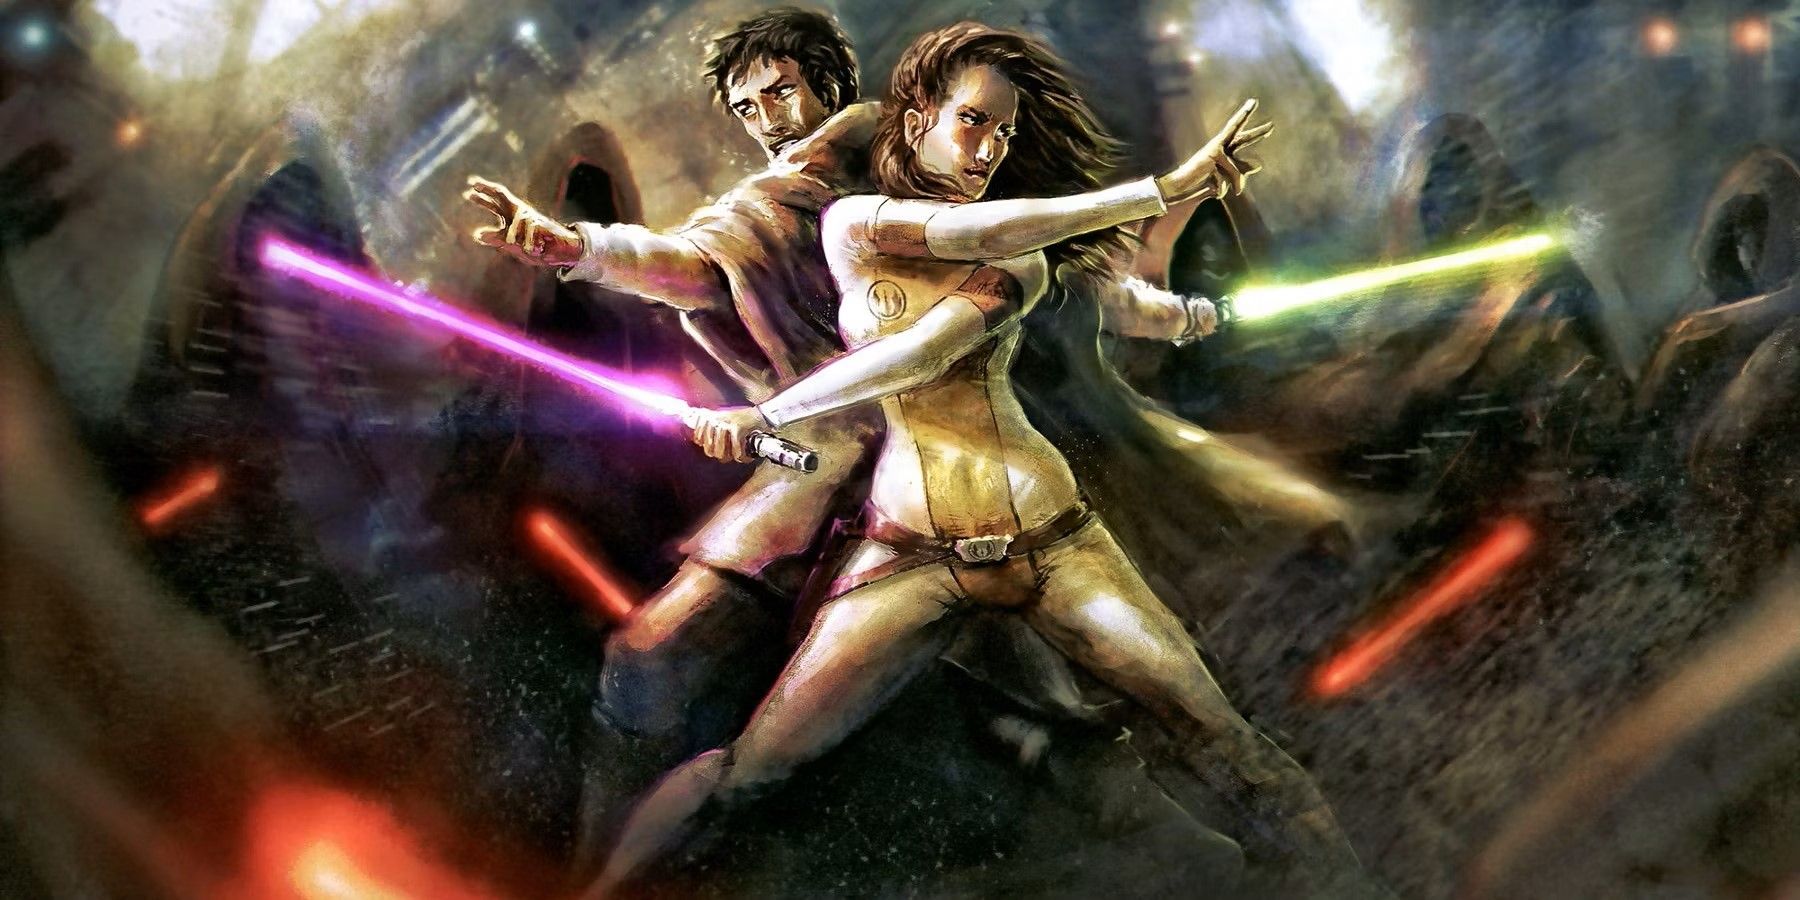 Jaina Solo fights in battle in Star Wars